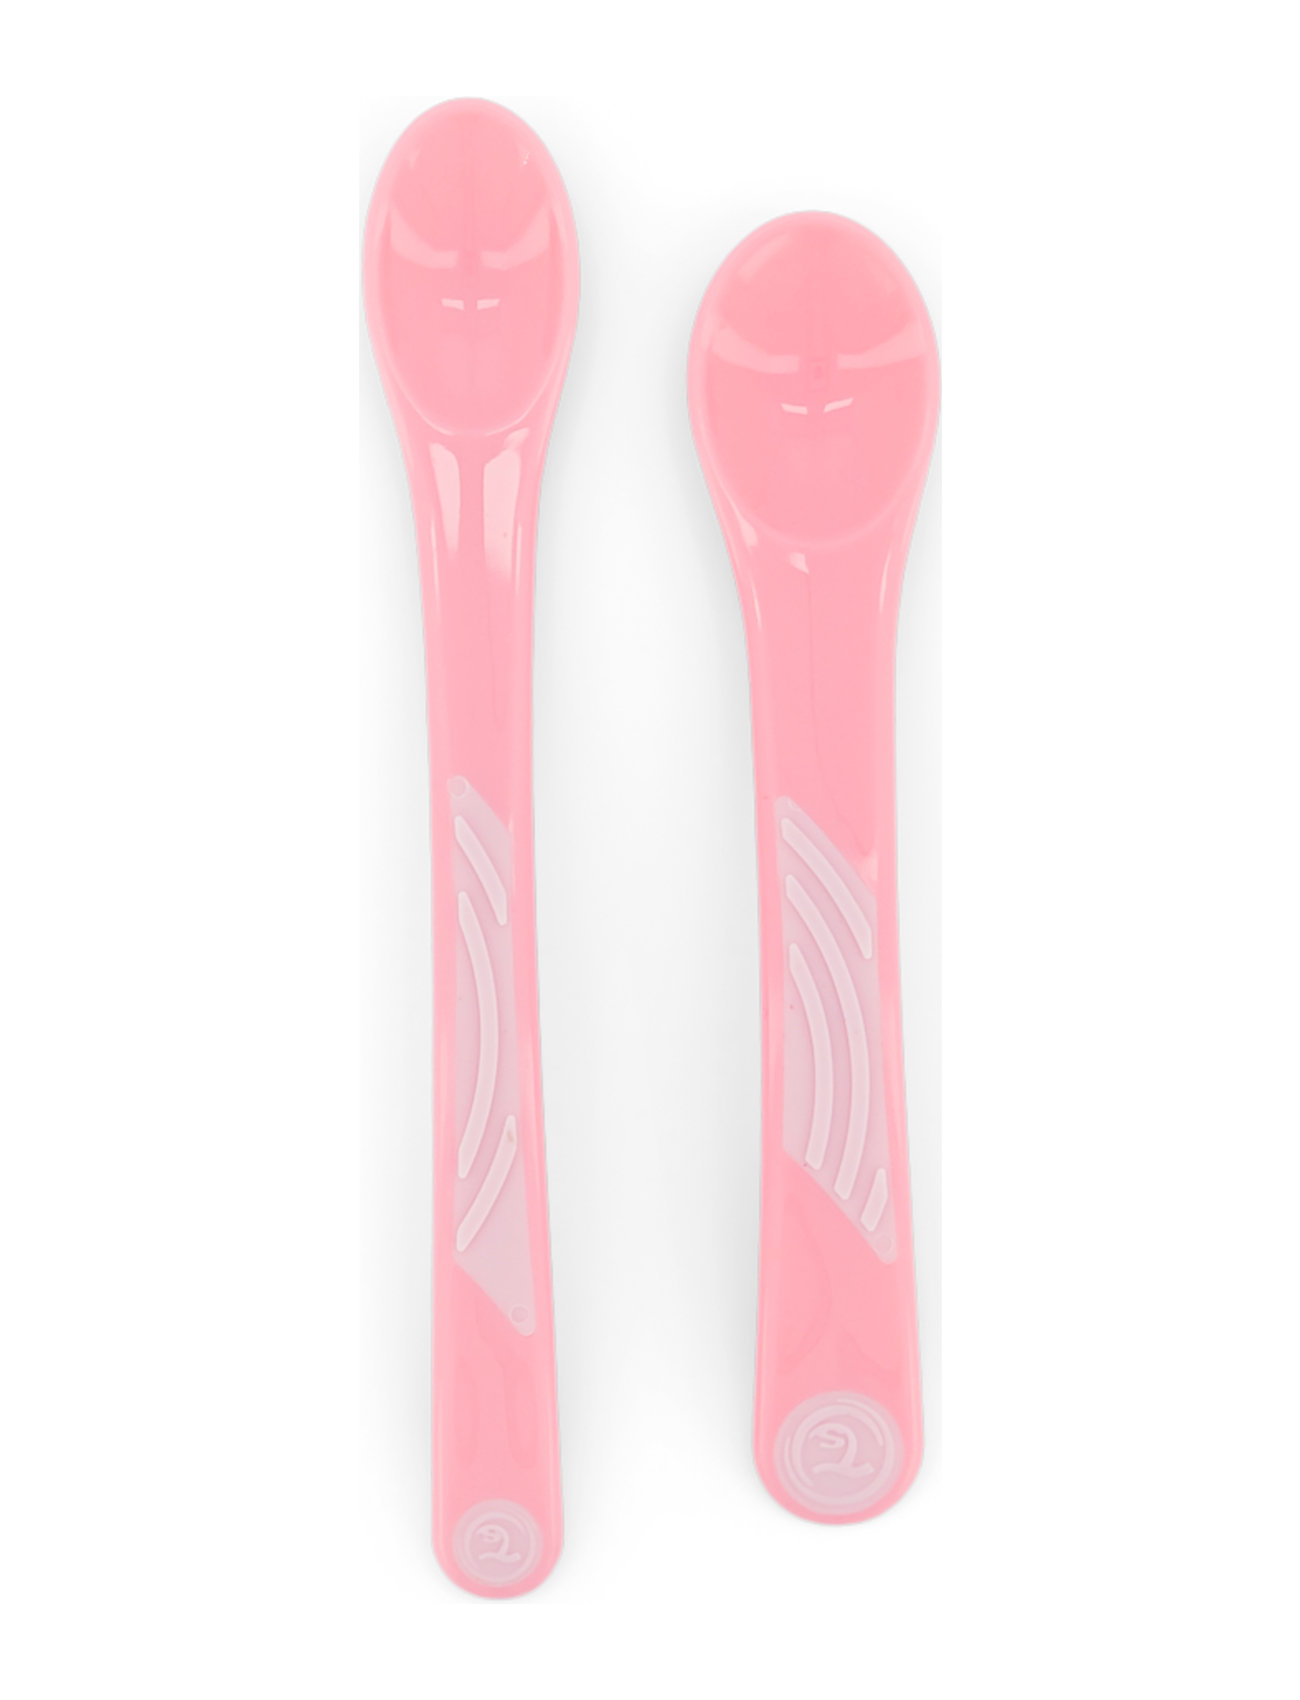 Twistshake 2X Feeding Spoon Set 4+M Pastel Pink Home Meal Time Cutlery Pink Twistshake